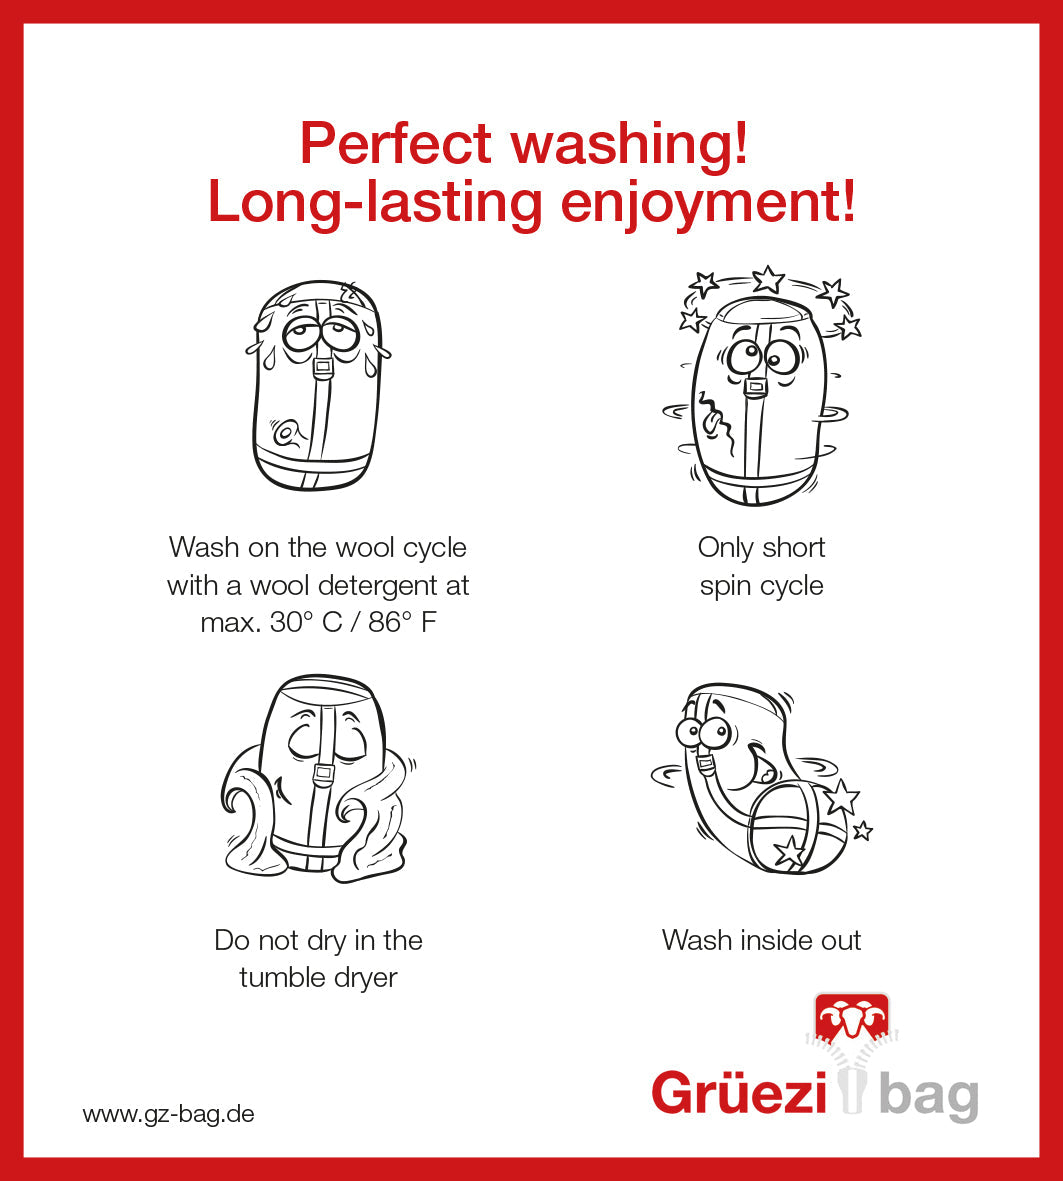 Grüezi bag Wollschlafsack Biopod Wolle Goas Comfort - Washing instructions english